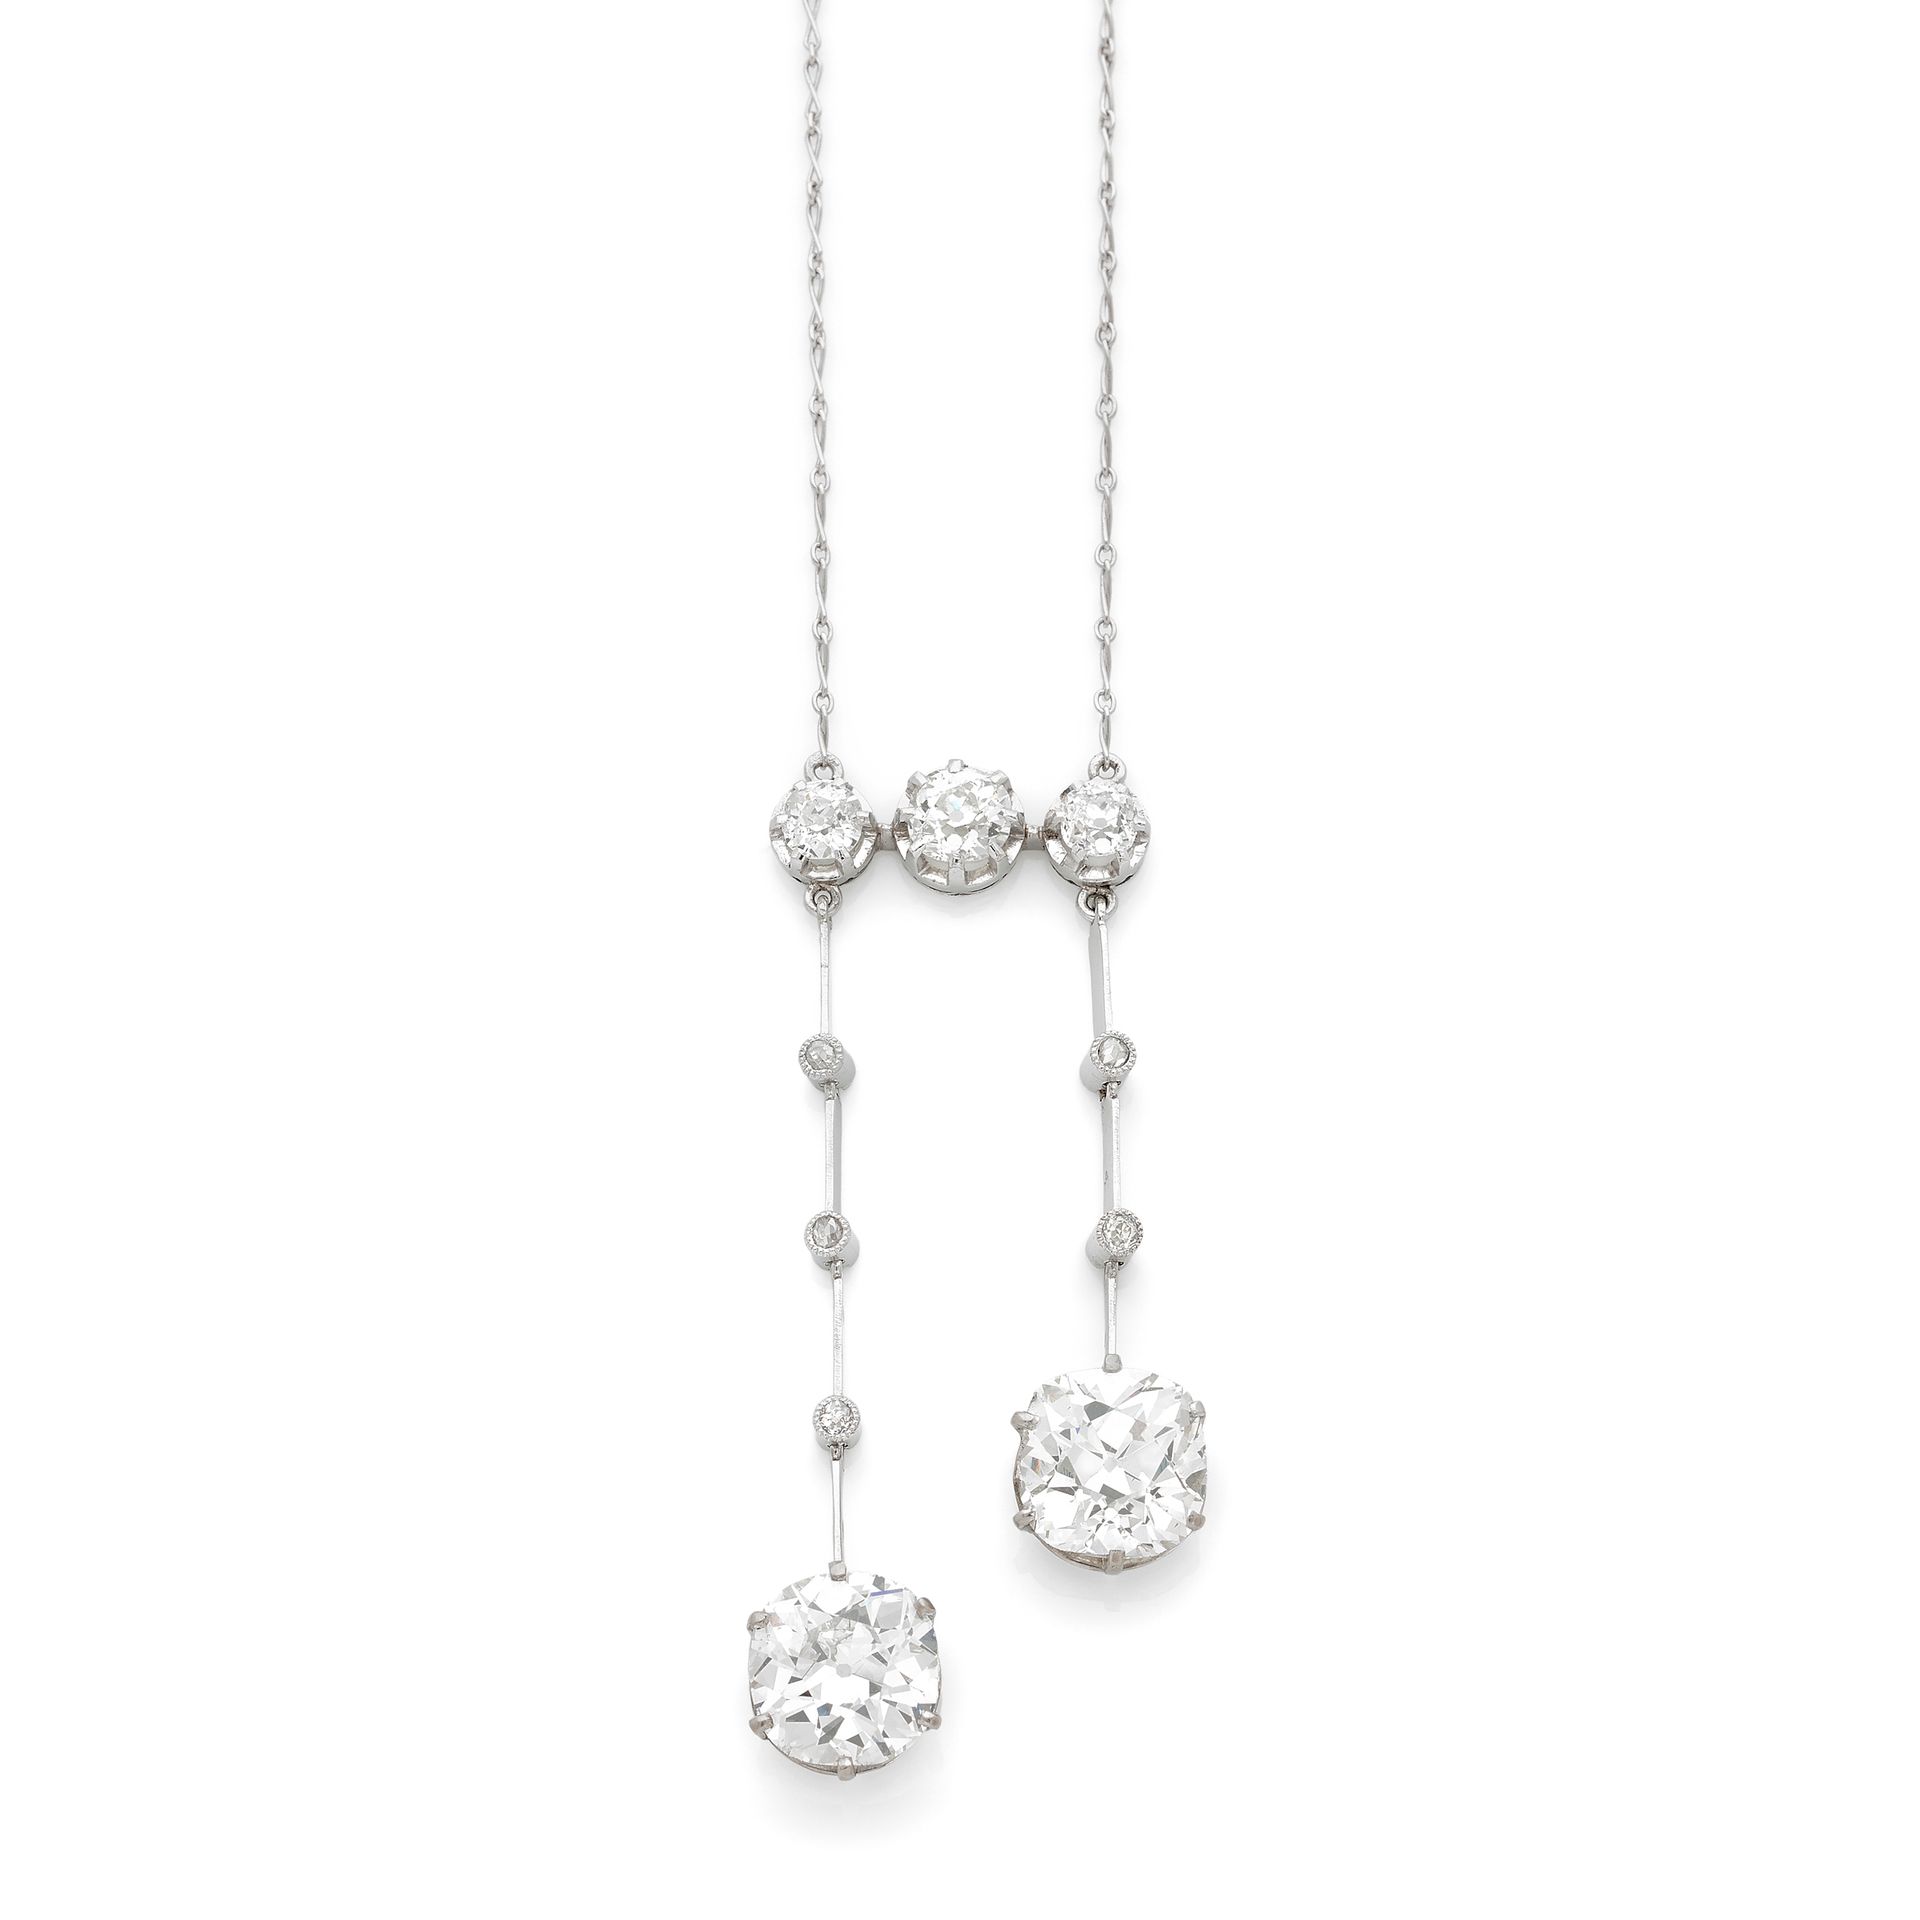 Null 美丽的女式内衣项链

一条镶有两颗枕形钻石的钻石和铂金项链，重量为4.87克拉和4.09克拉。

一条镶有两颗枕形钻石的钻石和铂金项链，重量为4.87&hellip;